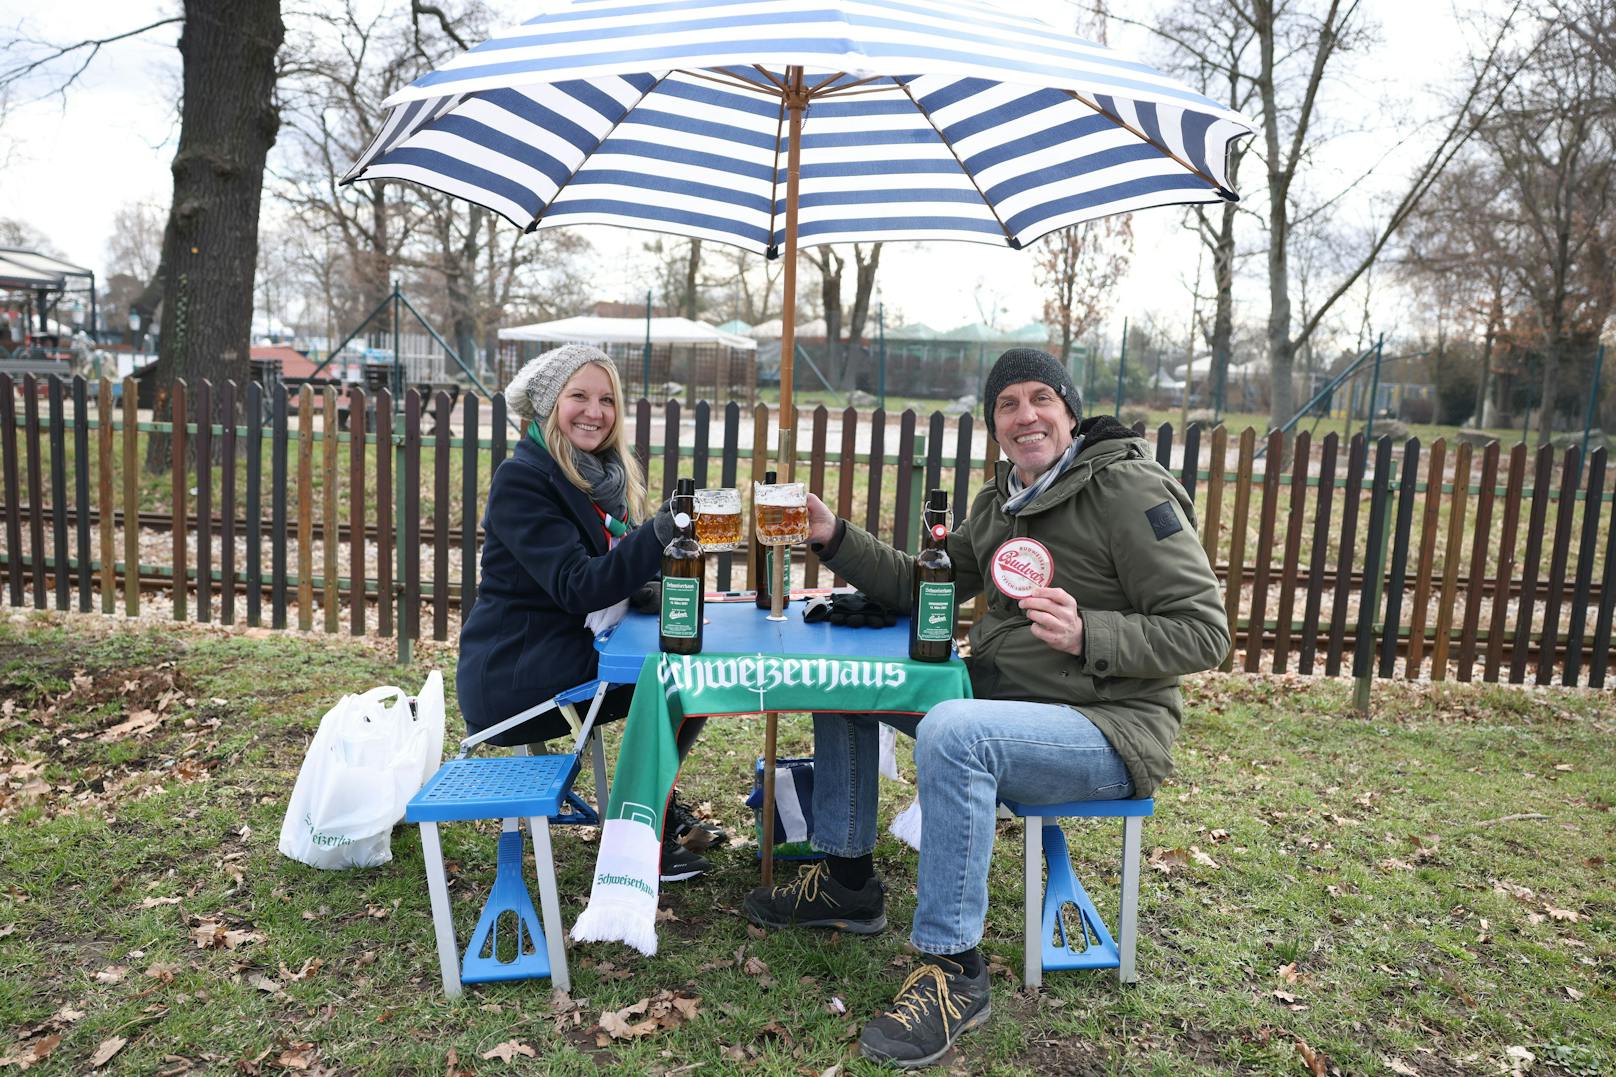 Ilse und Peter beim "Bier-Picknick" im Wiener Prater …